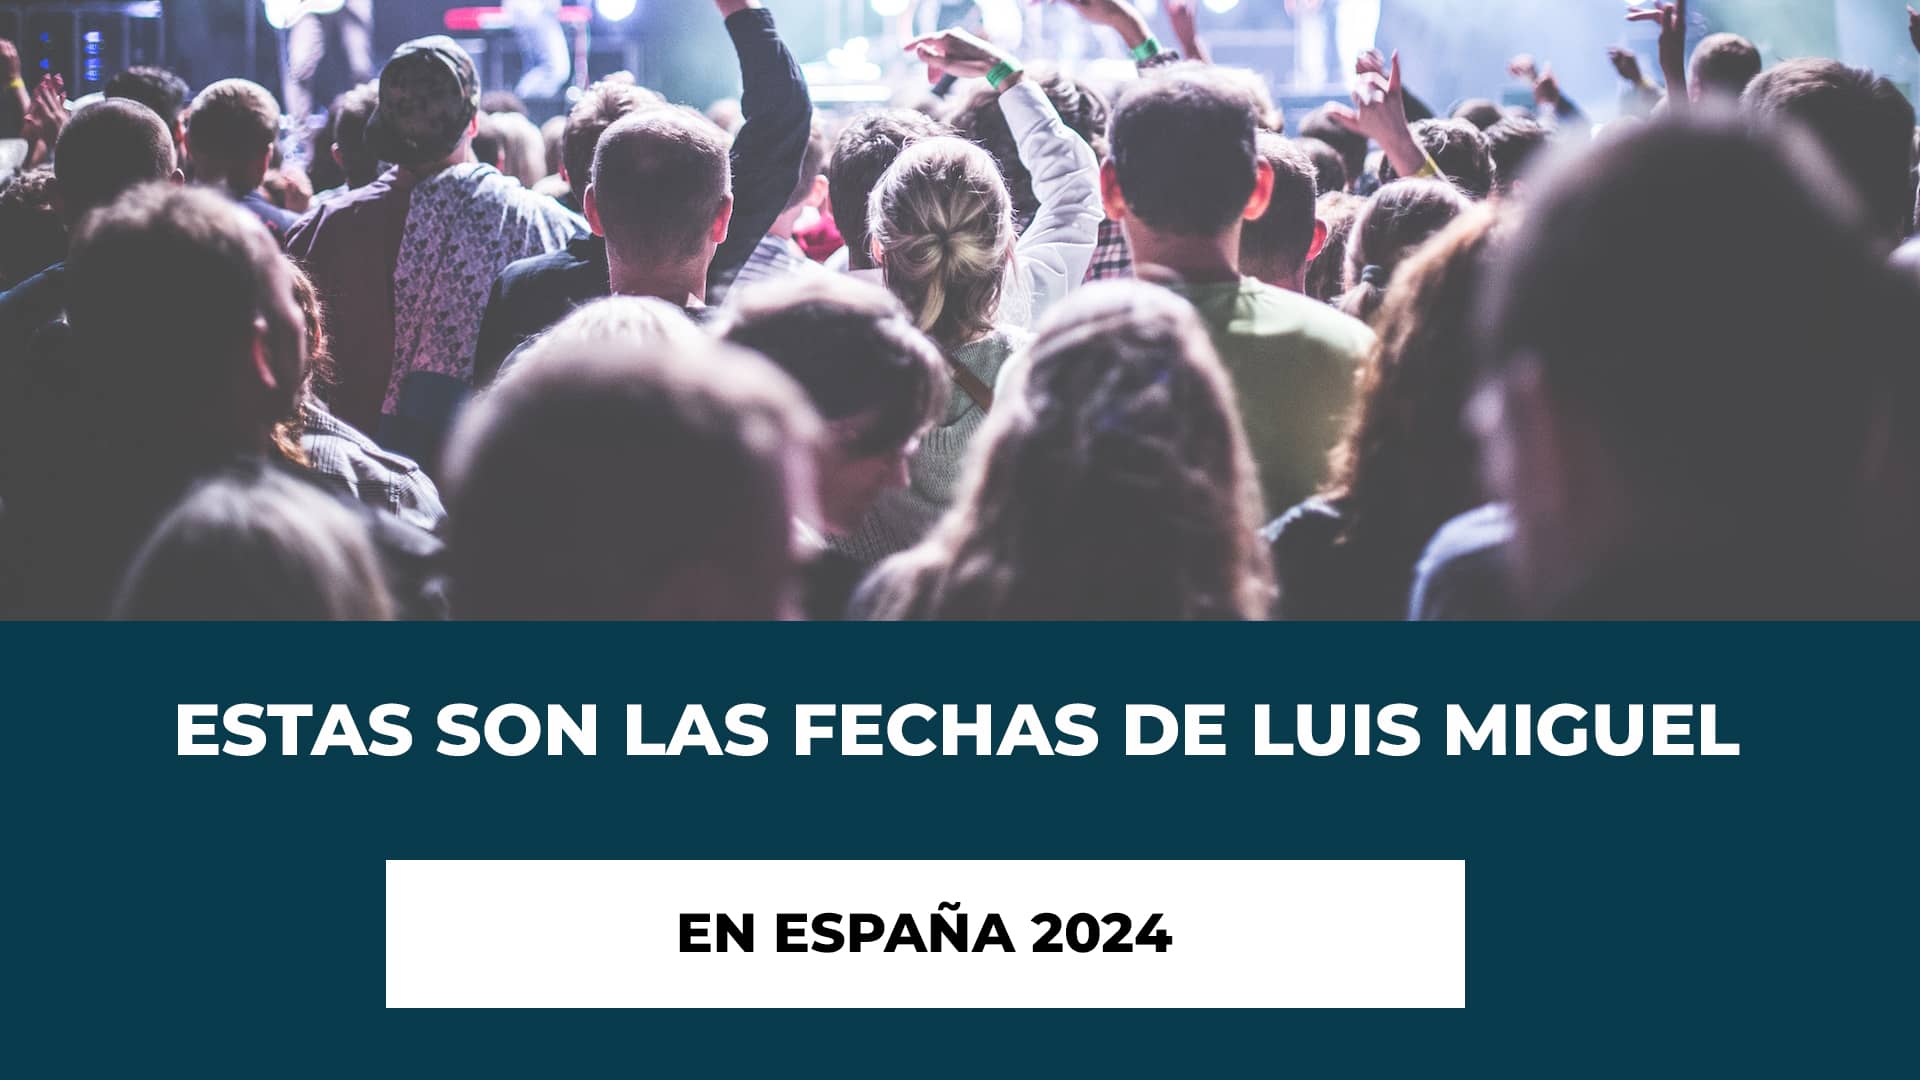 Estas son las fechas de Luis Miguel en España 2024 - Fechas - Recinto - Sobre Luis Miguel - Compra de Entradas